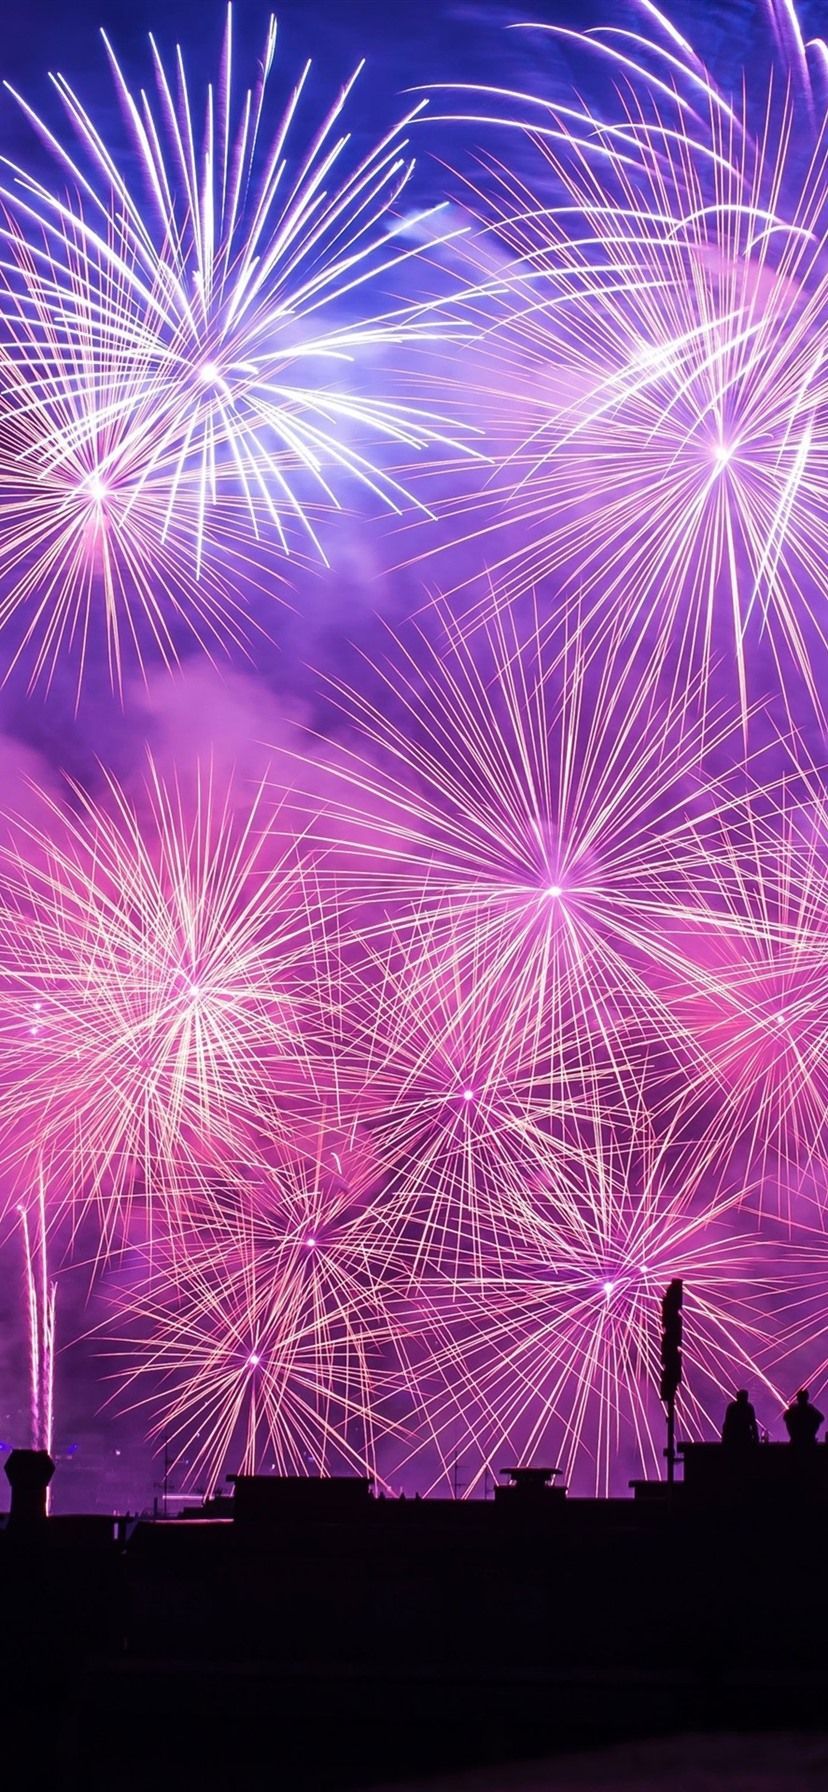 Neujahr Hintergrundbild 828x1792. Schönes Feuerwerk, Nacht, Stadt 3840x2160 UHD 4K Hintergrundbilder, HD, Bild